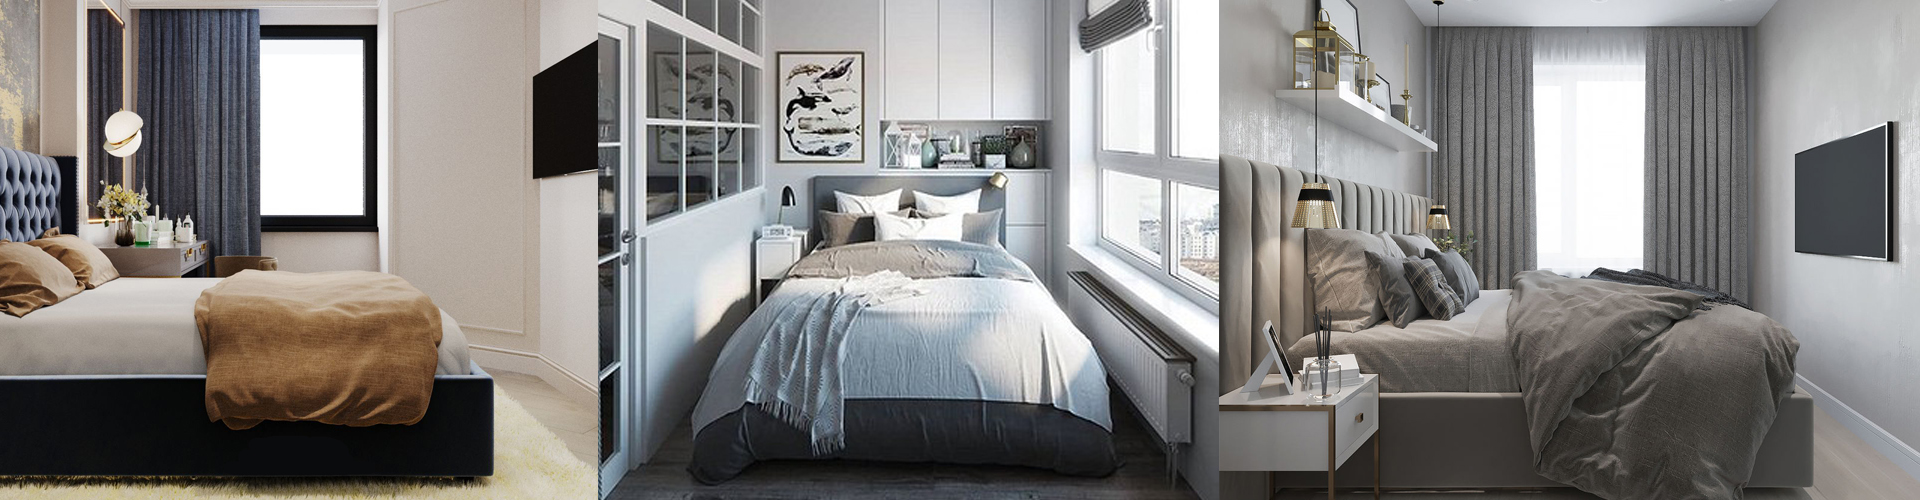 Как красиво оформить кровать в спальне: 5 советов